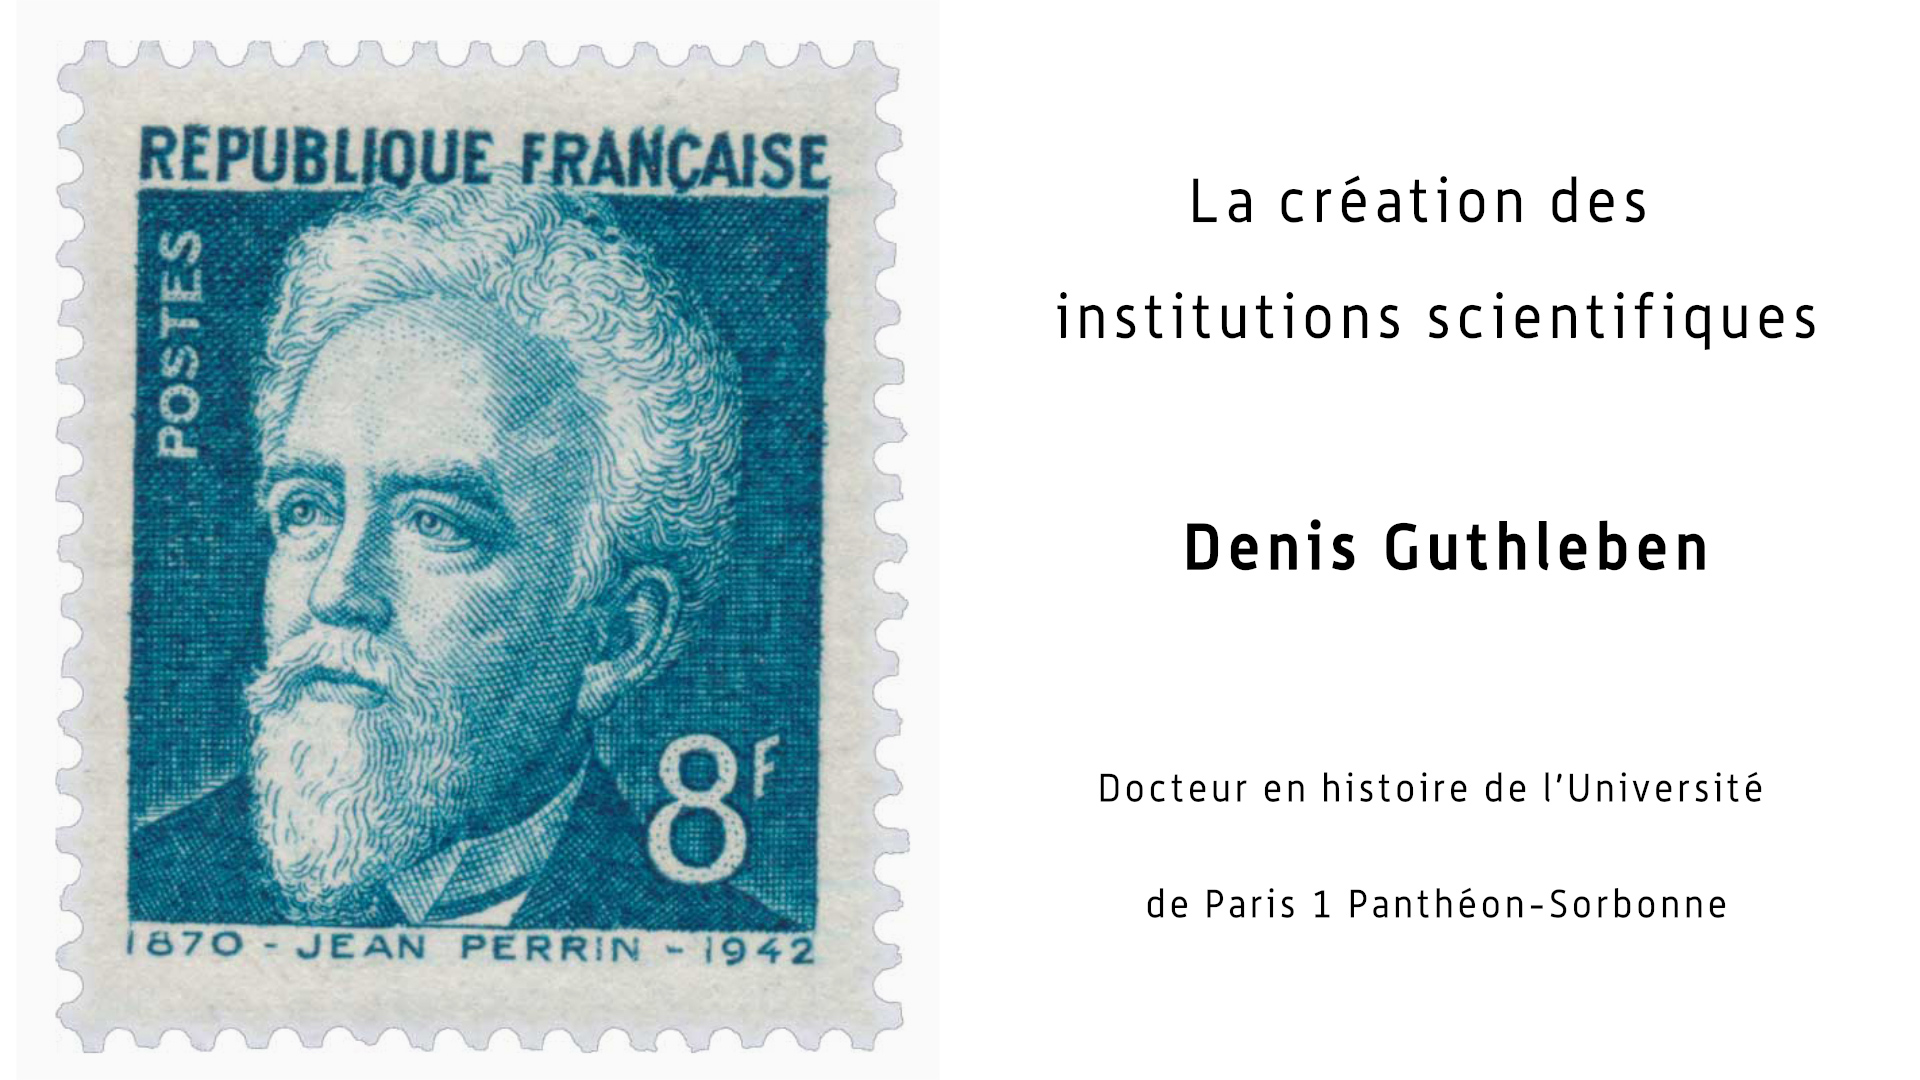 La création des institutions scientifiques françaises